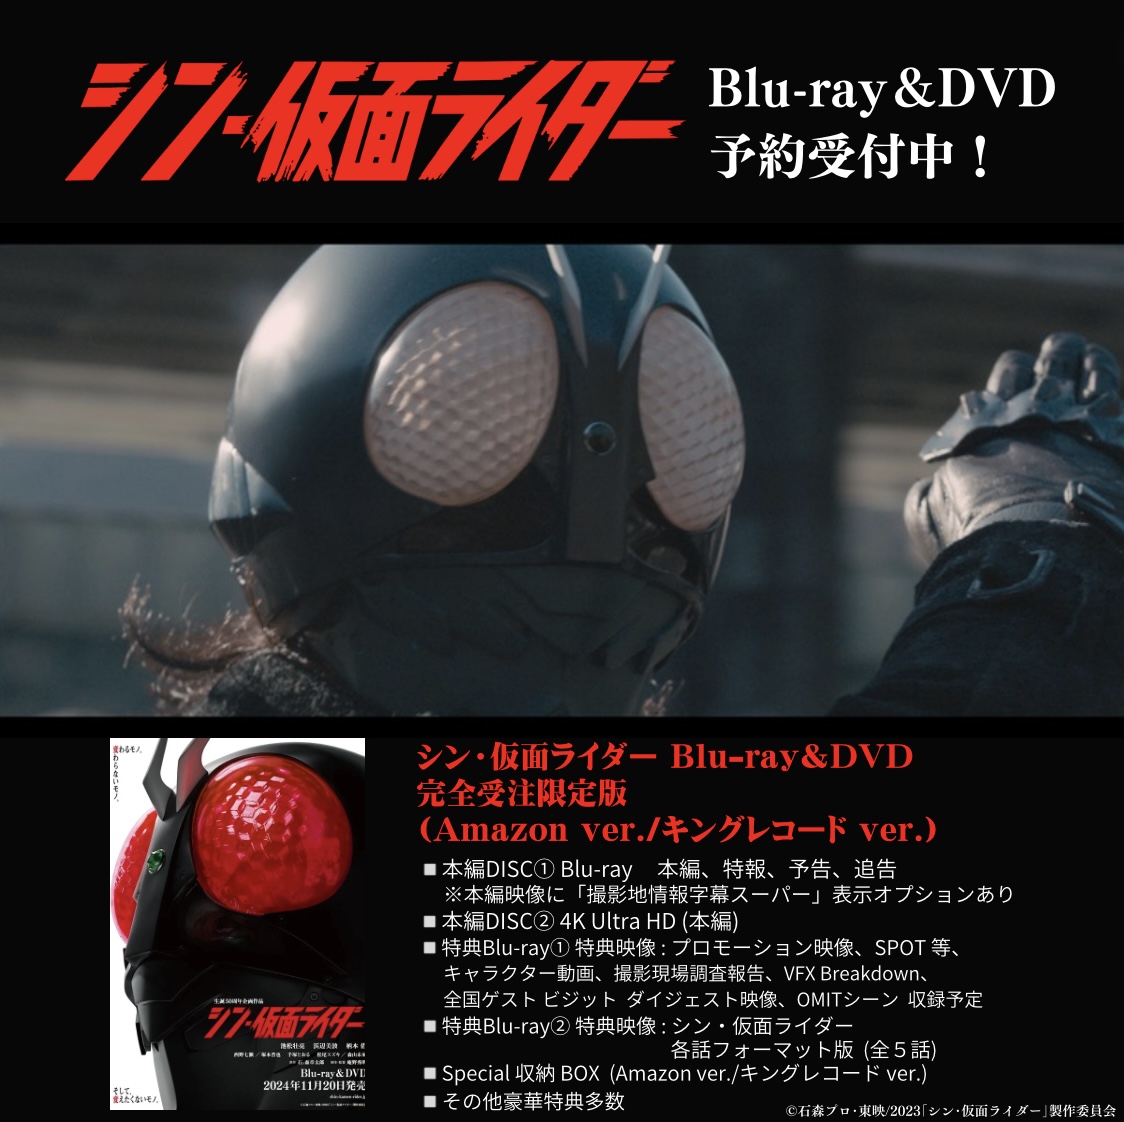 『 #シン・仮面ライダー 』Blu-ray＆DVD 11月20日発売。 豪華特典セットが付属する完全受注限定版、バンドル版（キングレコードver）、バンドル版（Amazon ver）の予約期間は6月16日（日）23:59 まで。 商品詳細↓ king-cr.jp/shin-kamen-rid… 御期待ください。